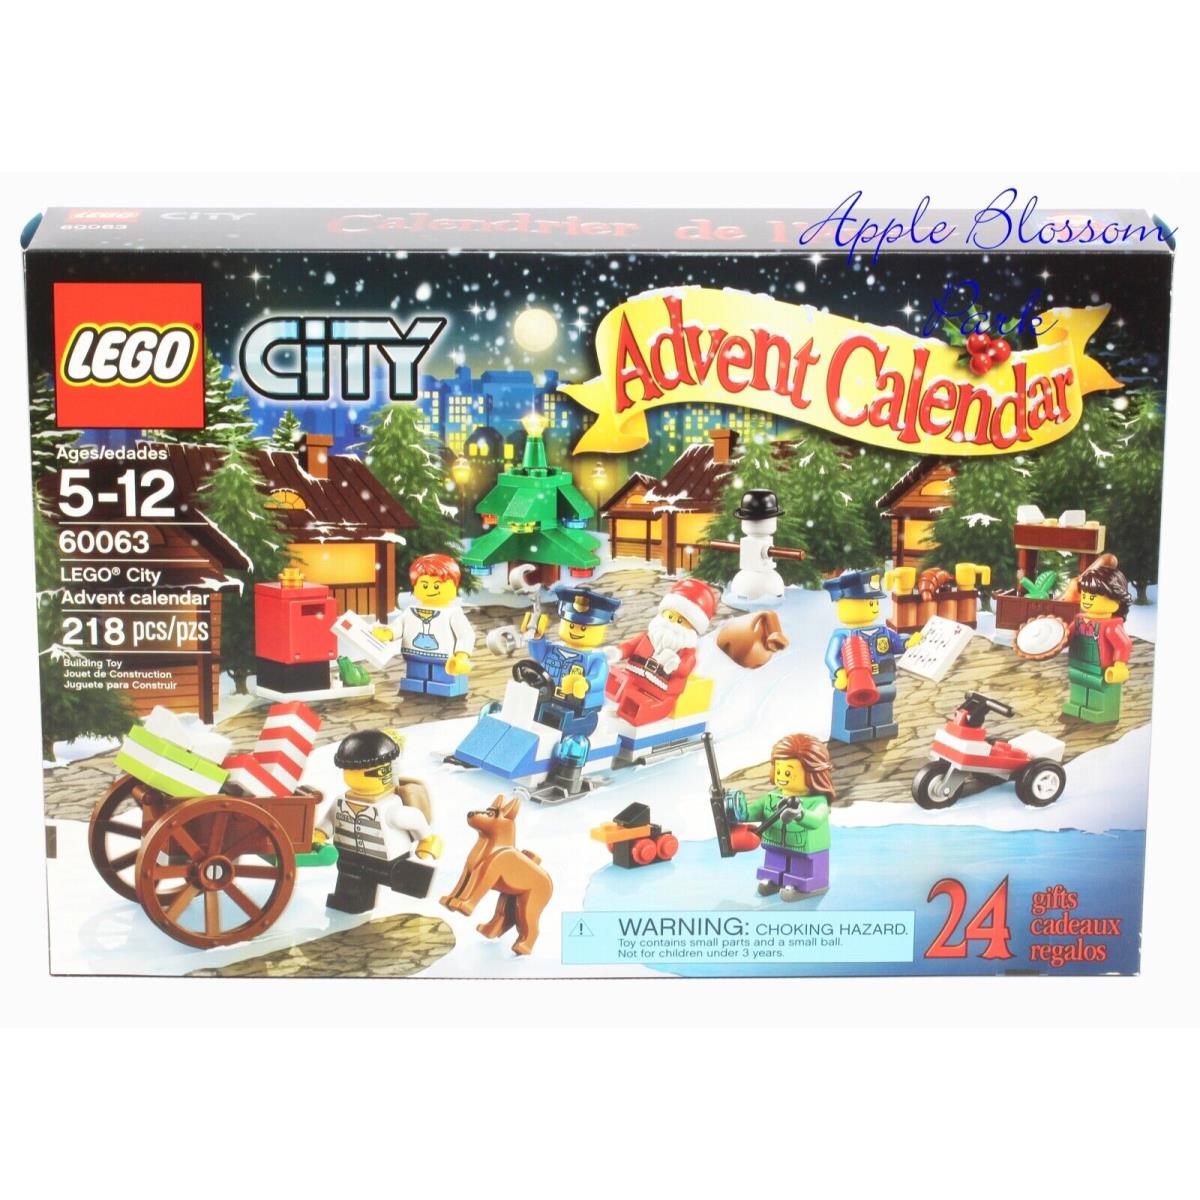 Lego 2014 City Advent Calendar - Christmas Holiday Set 60063 W/xmas Santa Claus